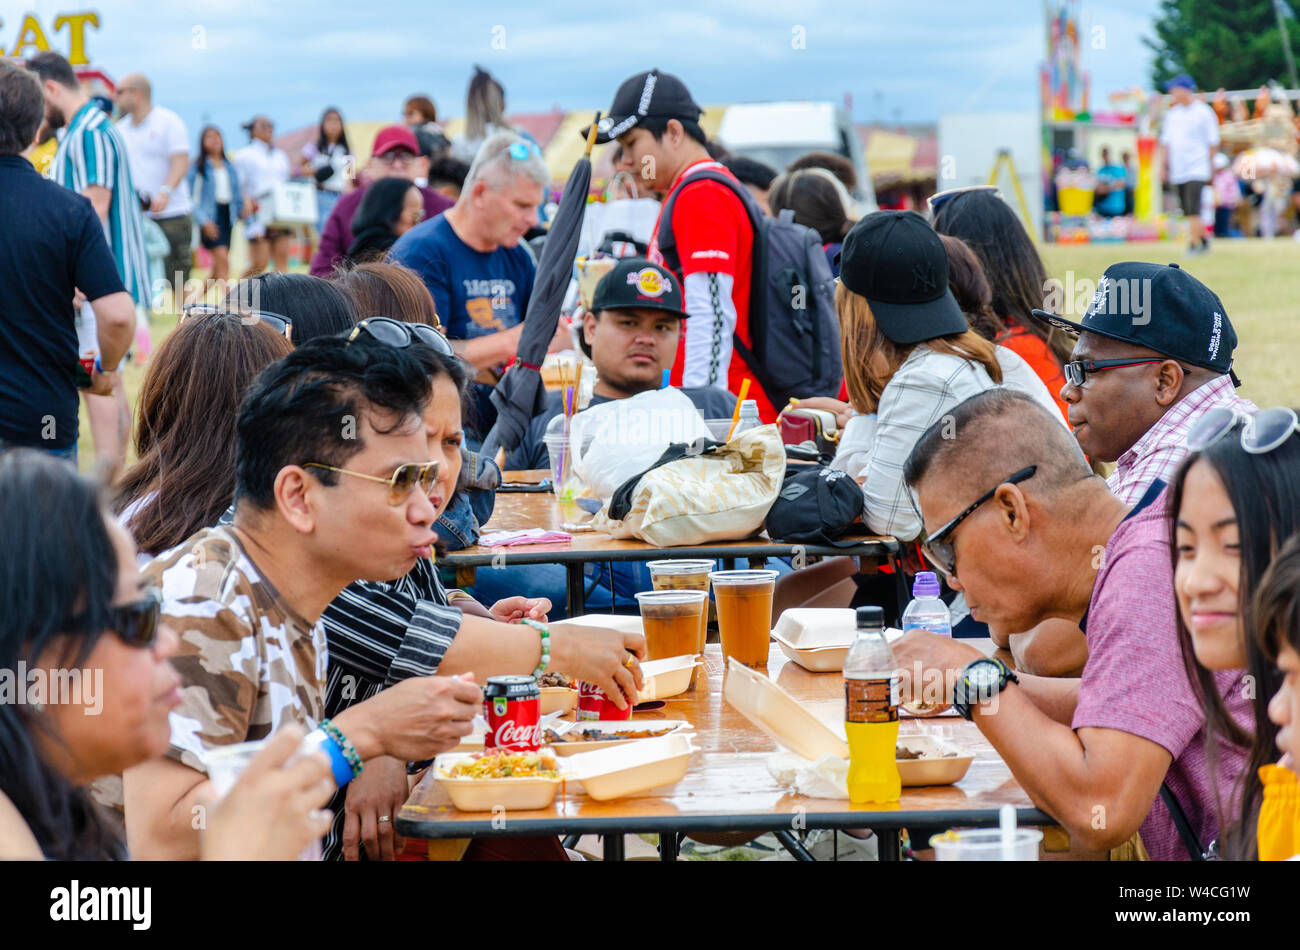 Die Leute sitzen Außen am Gestell Tisch und essen Essen gekauft Form geht im Barrio Fiesta in London. Stockfoto